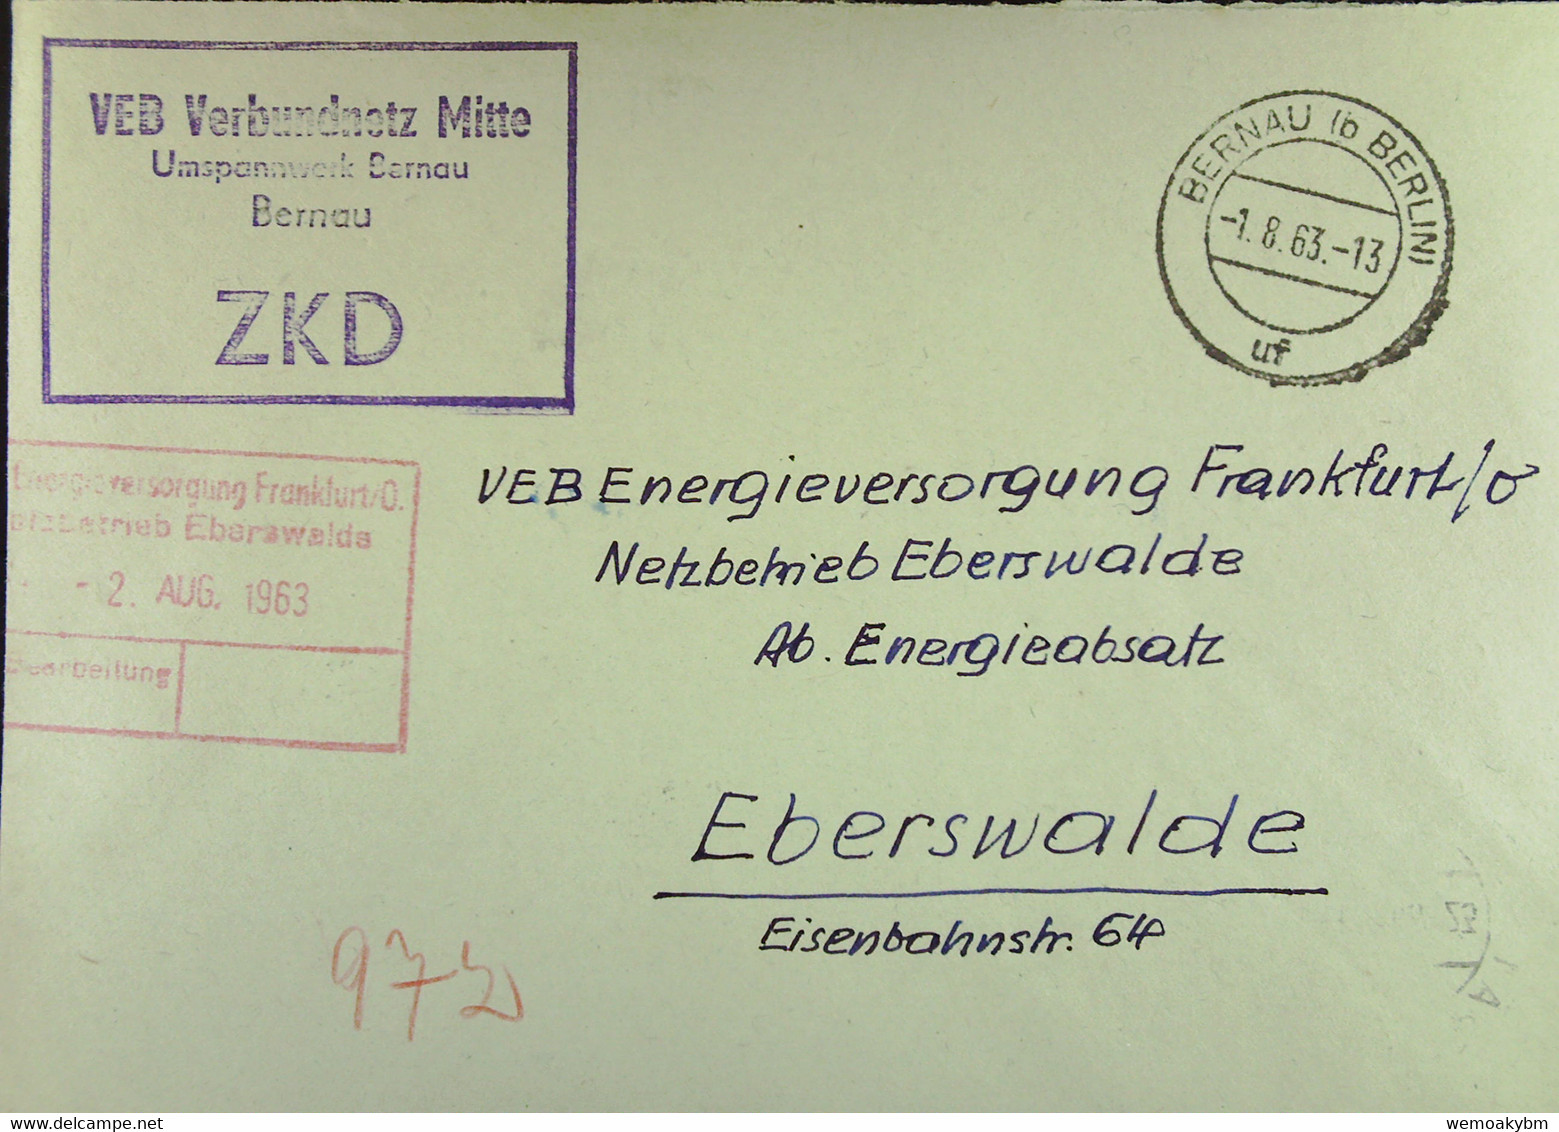 Fern-Brief Mit ZKD-Kastenst "VEB Verbundnetz Mitte Umspannwerk Bernau" 1.8.63 An VEB EV Eberswalde Mit Rotem Eing-St - Storia Postale